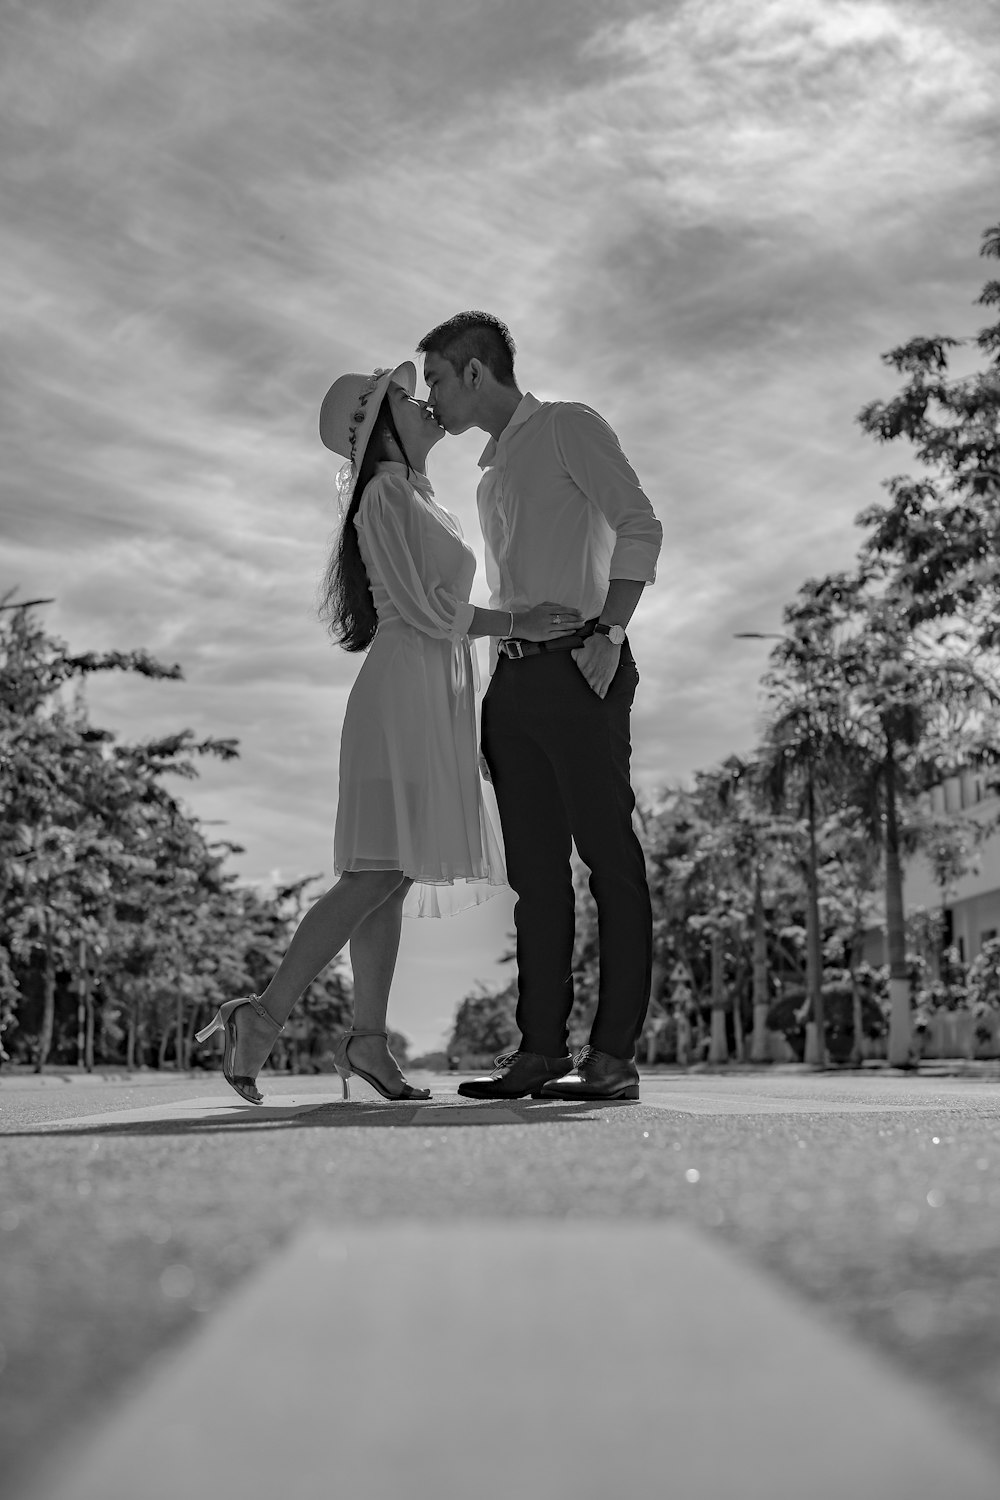 homme et femme s’embrassant sur la route dans la photographie en niveaux de gris